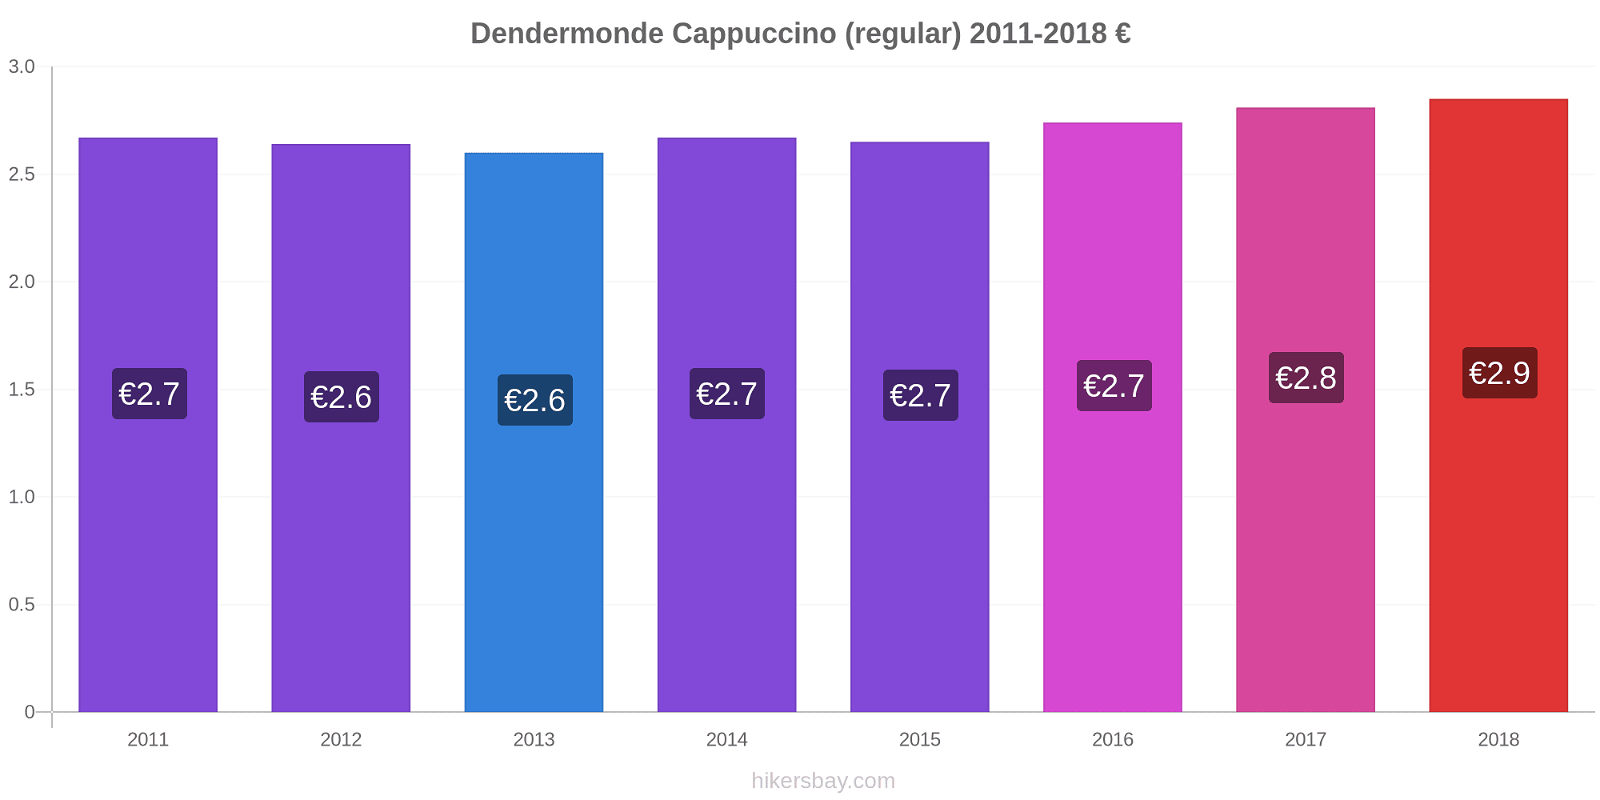 Dendermonde price changes Cappuccino (regular) hikersbay.com